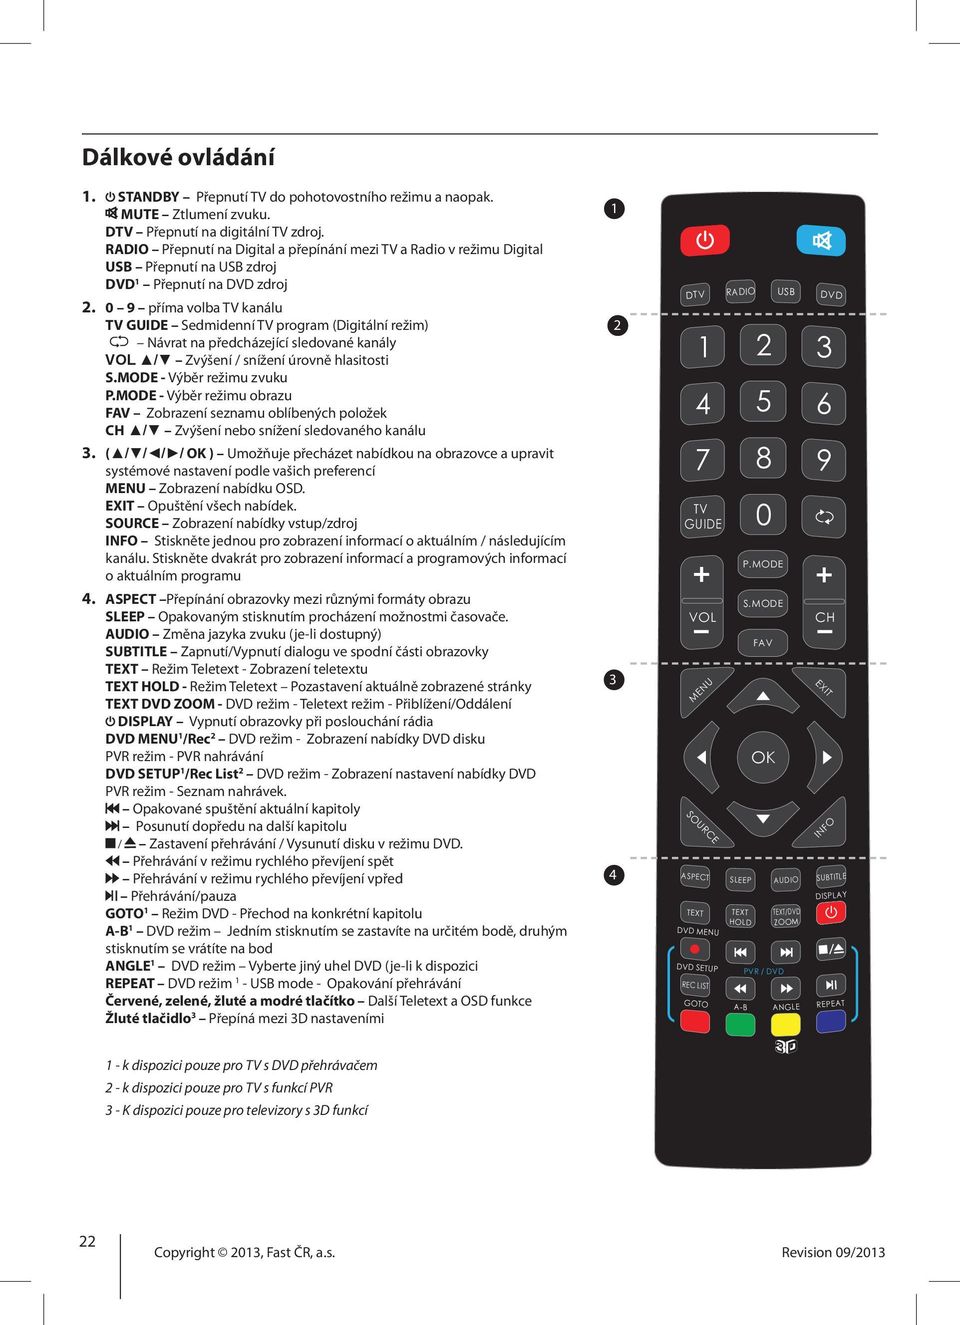 0 9 příma volba TV kanálu TV GUIDE Sedmidenní TV program (Digitální režim) Návrat na předcházející sledované kanály VOL / Zvýšení / snížení úrovně hlasitosti S.MODE - Výběr režimu zvuku P.